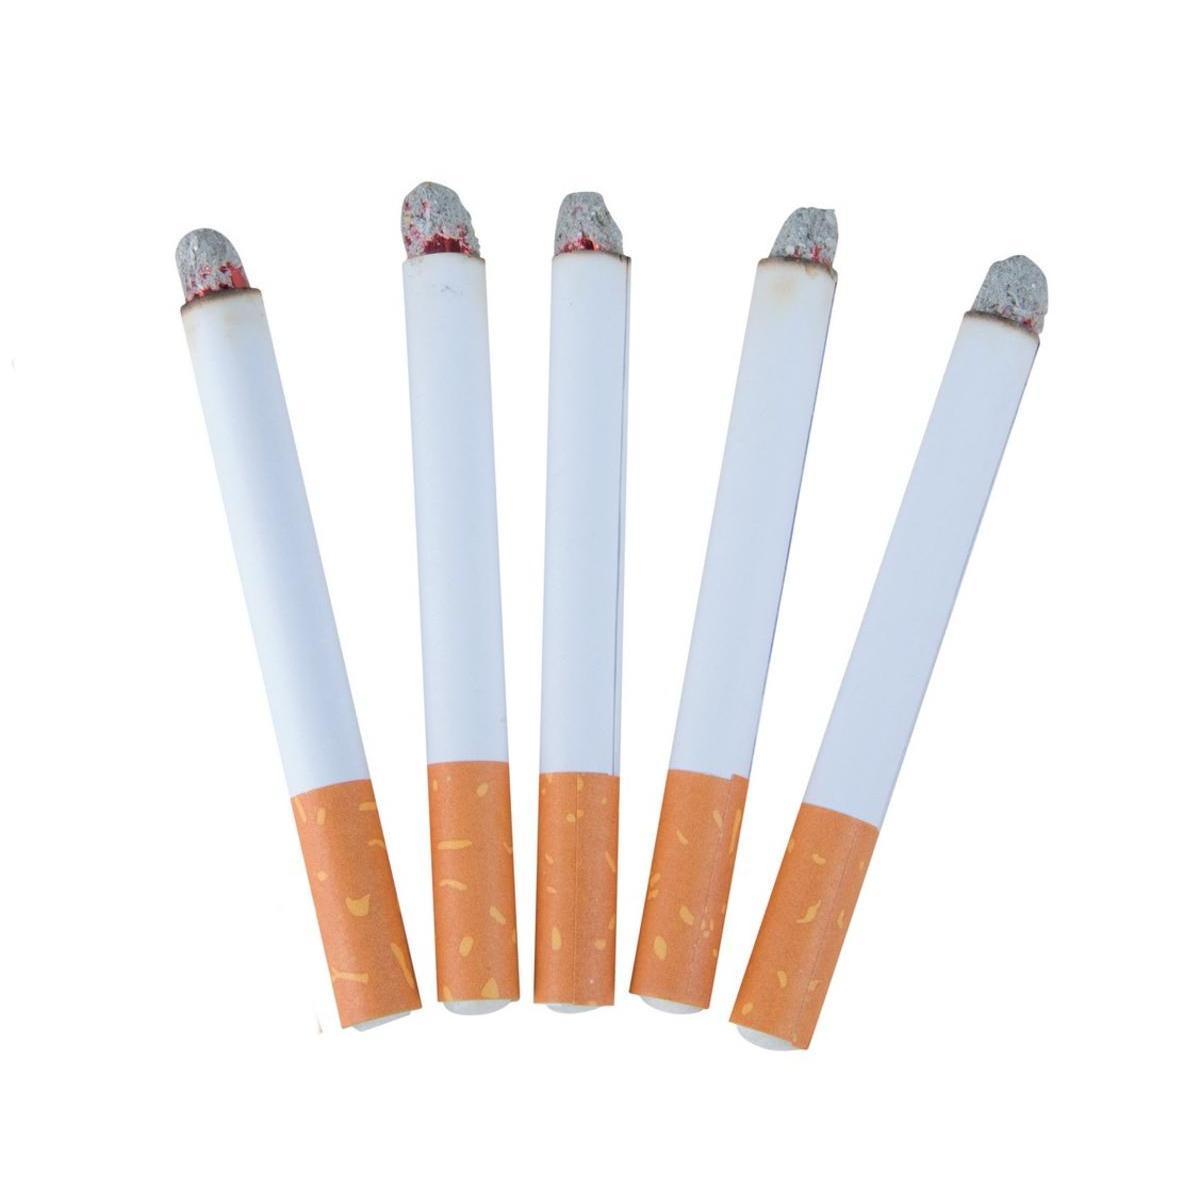 Blister 5 fausses cigarettes - L 16 x l 8 cm - Blanc - PTIT CLOWN